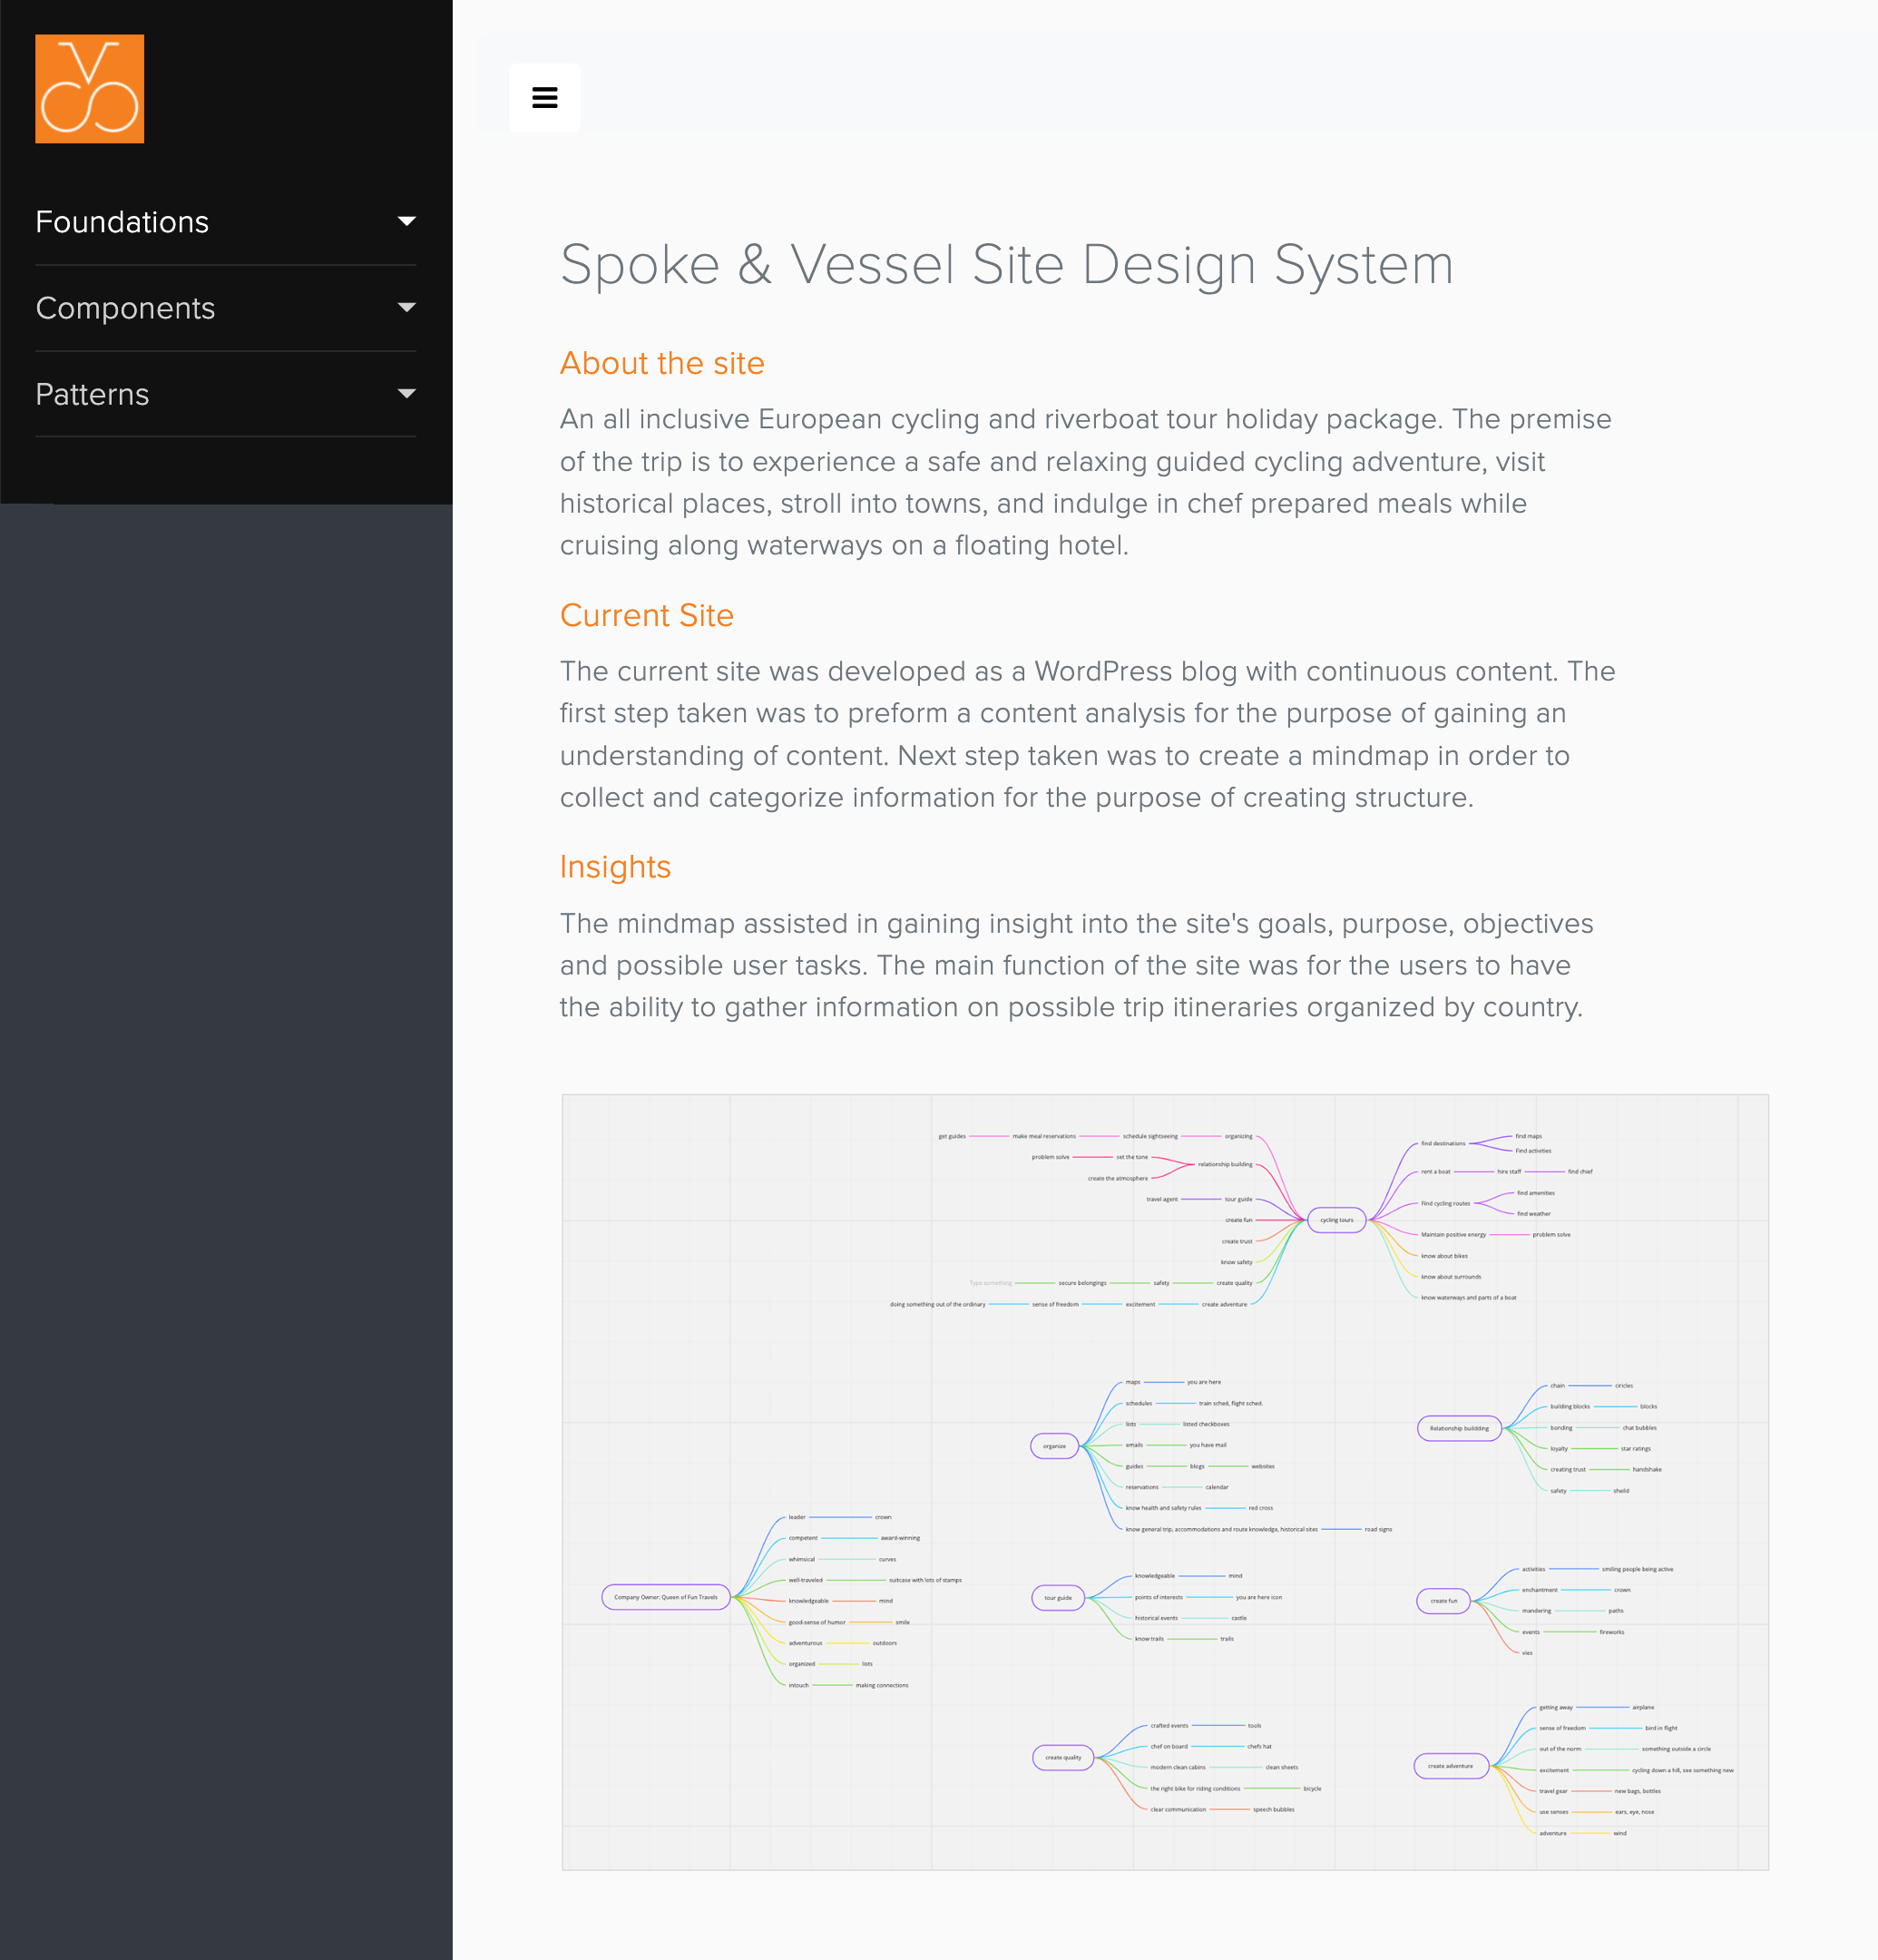 SV.com Website Design System